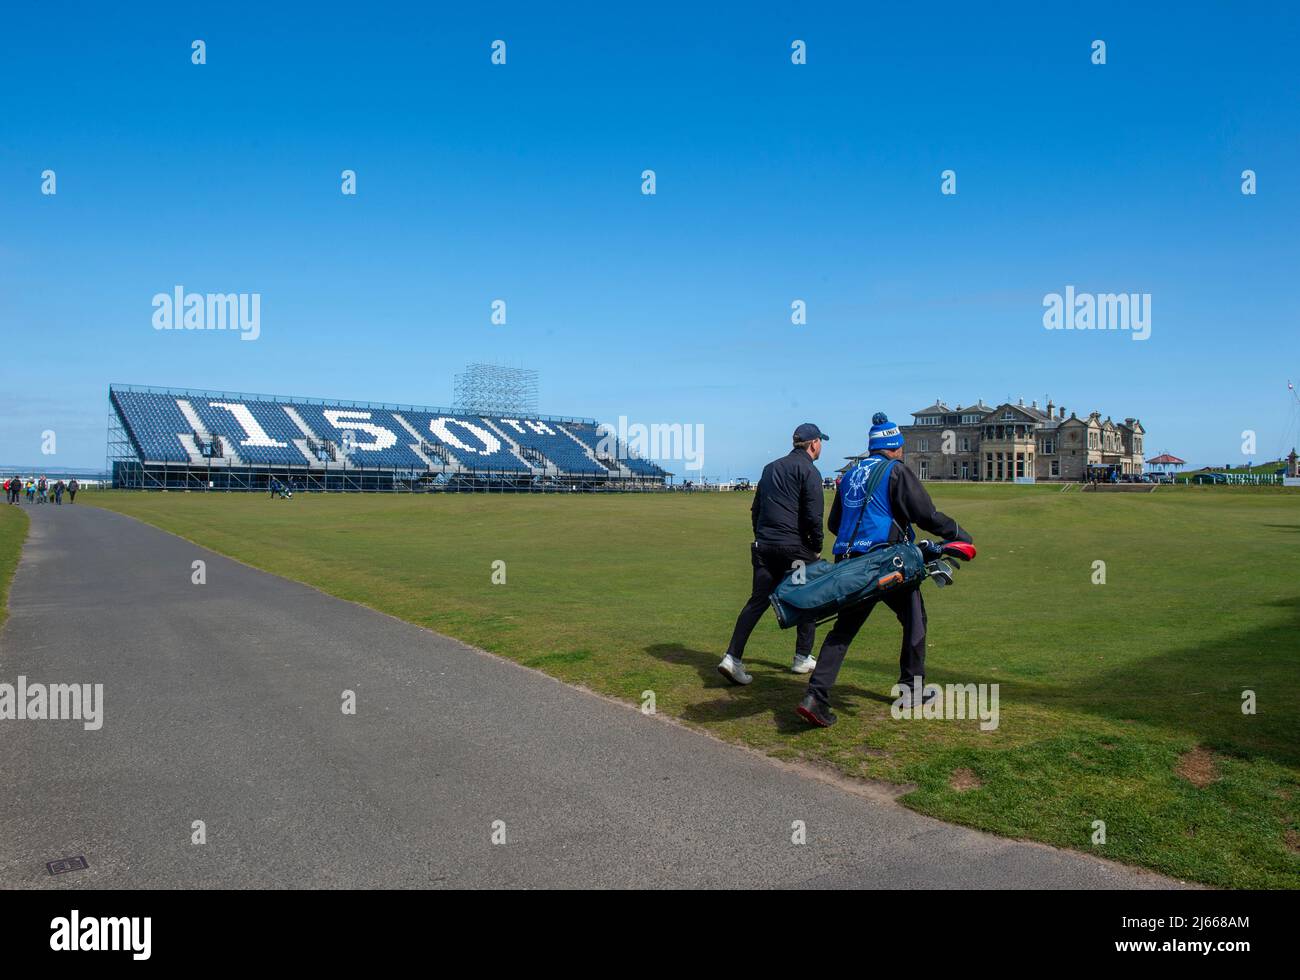 Temporaire se tient en place pour le tournoi Open Golf 150th qui se déroulera en juillet 2022 sur le Old course, St Andrews, Fife, Écosse. Banque D'Images